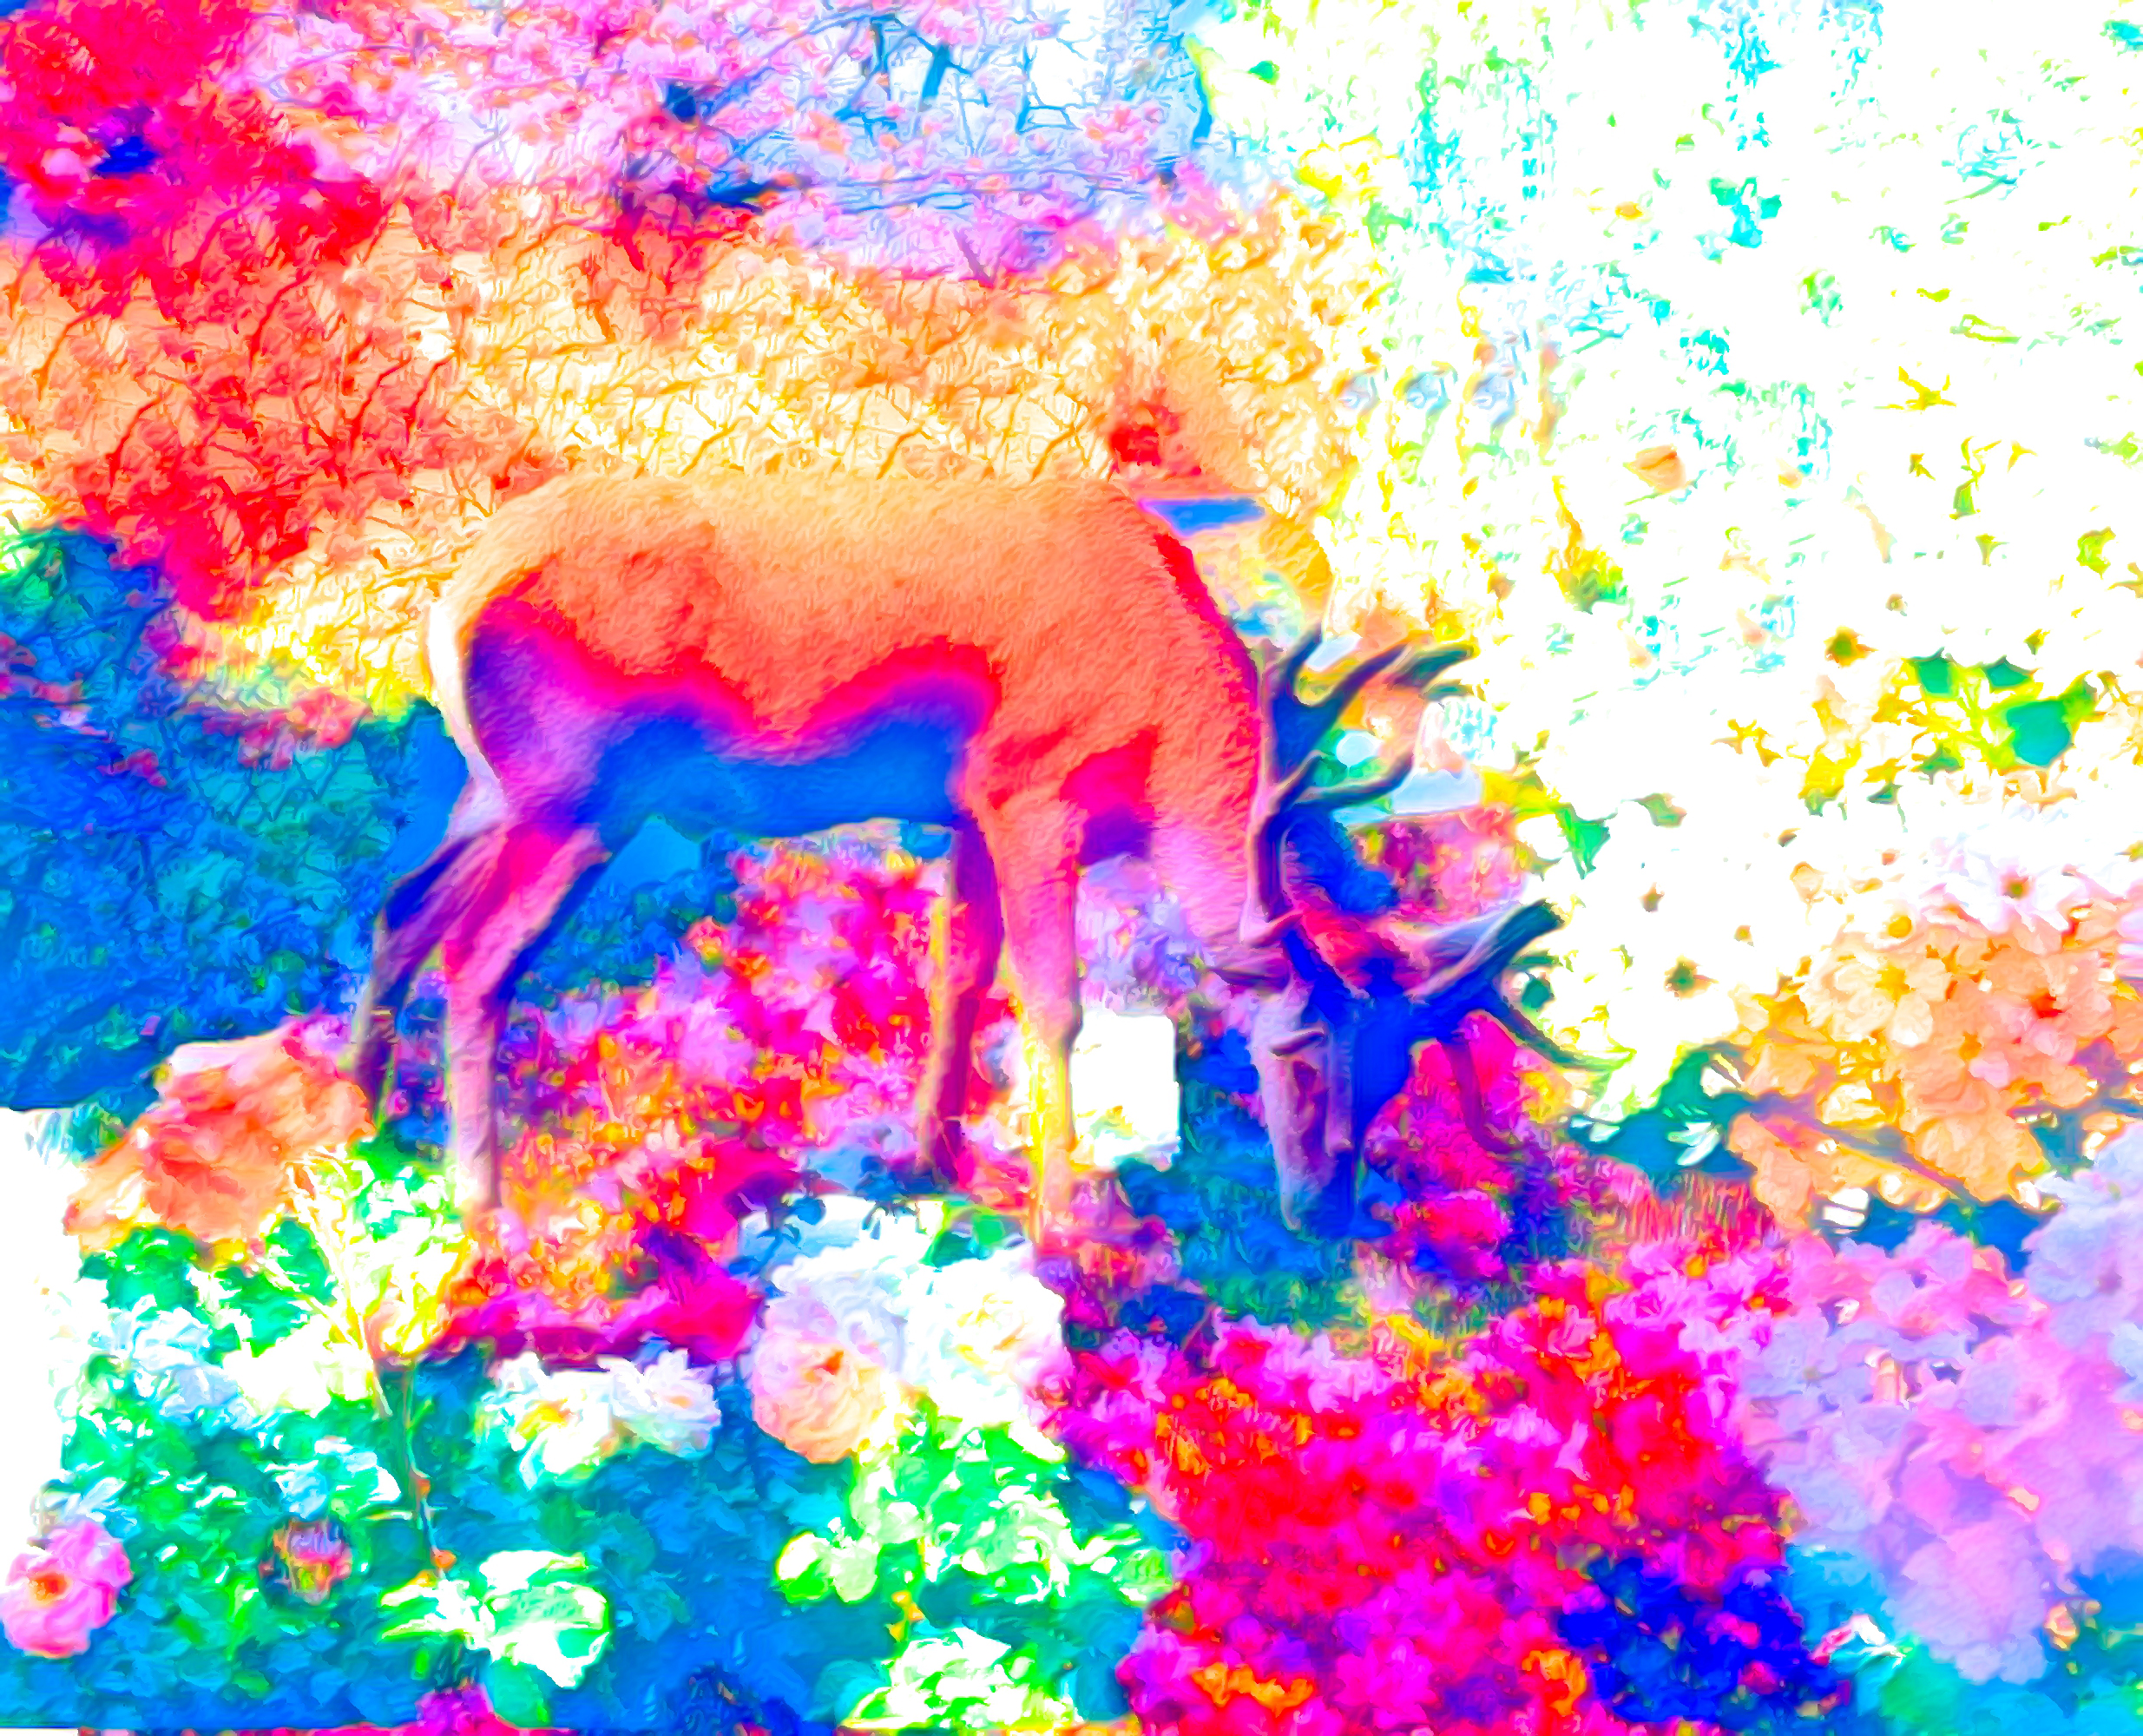 無料壁紙 背景画像 お花畑と鹿のカラフルでリアルな風景 Free Illustlation くりえいてぃぶ